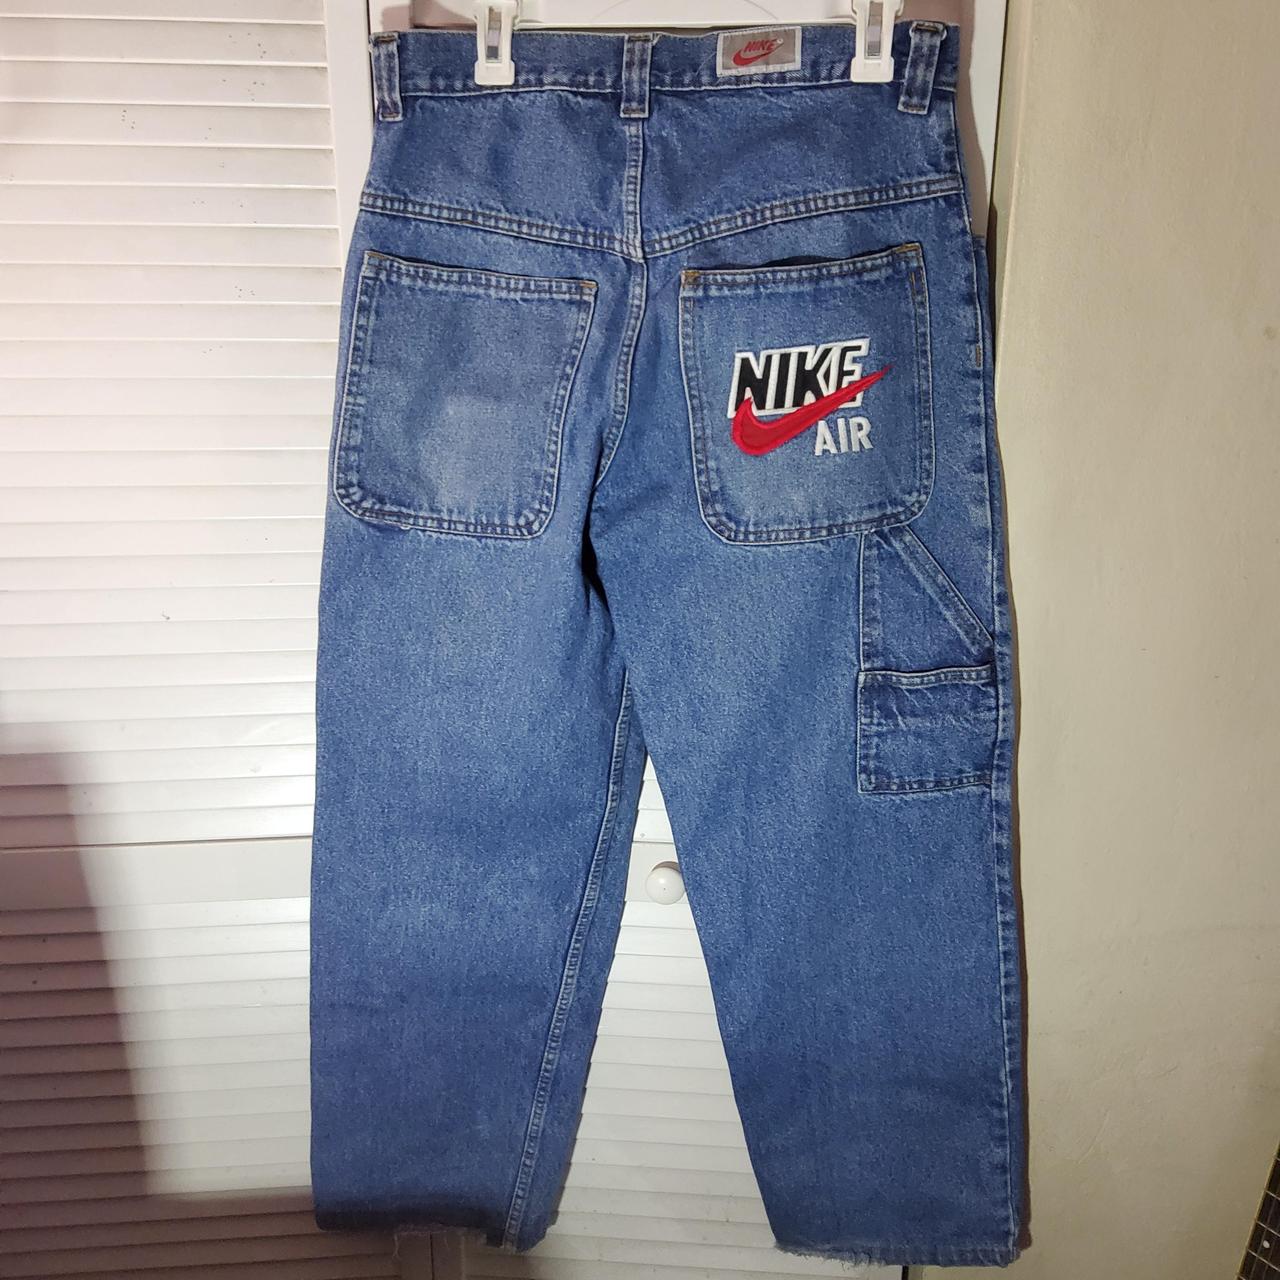 Levere Bugt Medicinsk malpractice Rare vintage 1990s nike air carpenter jeans. Some... - Depop